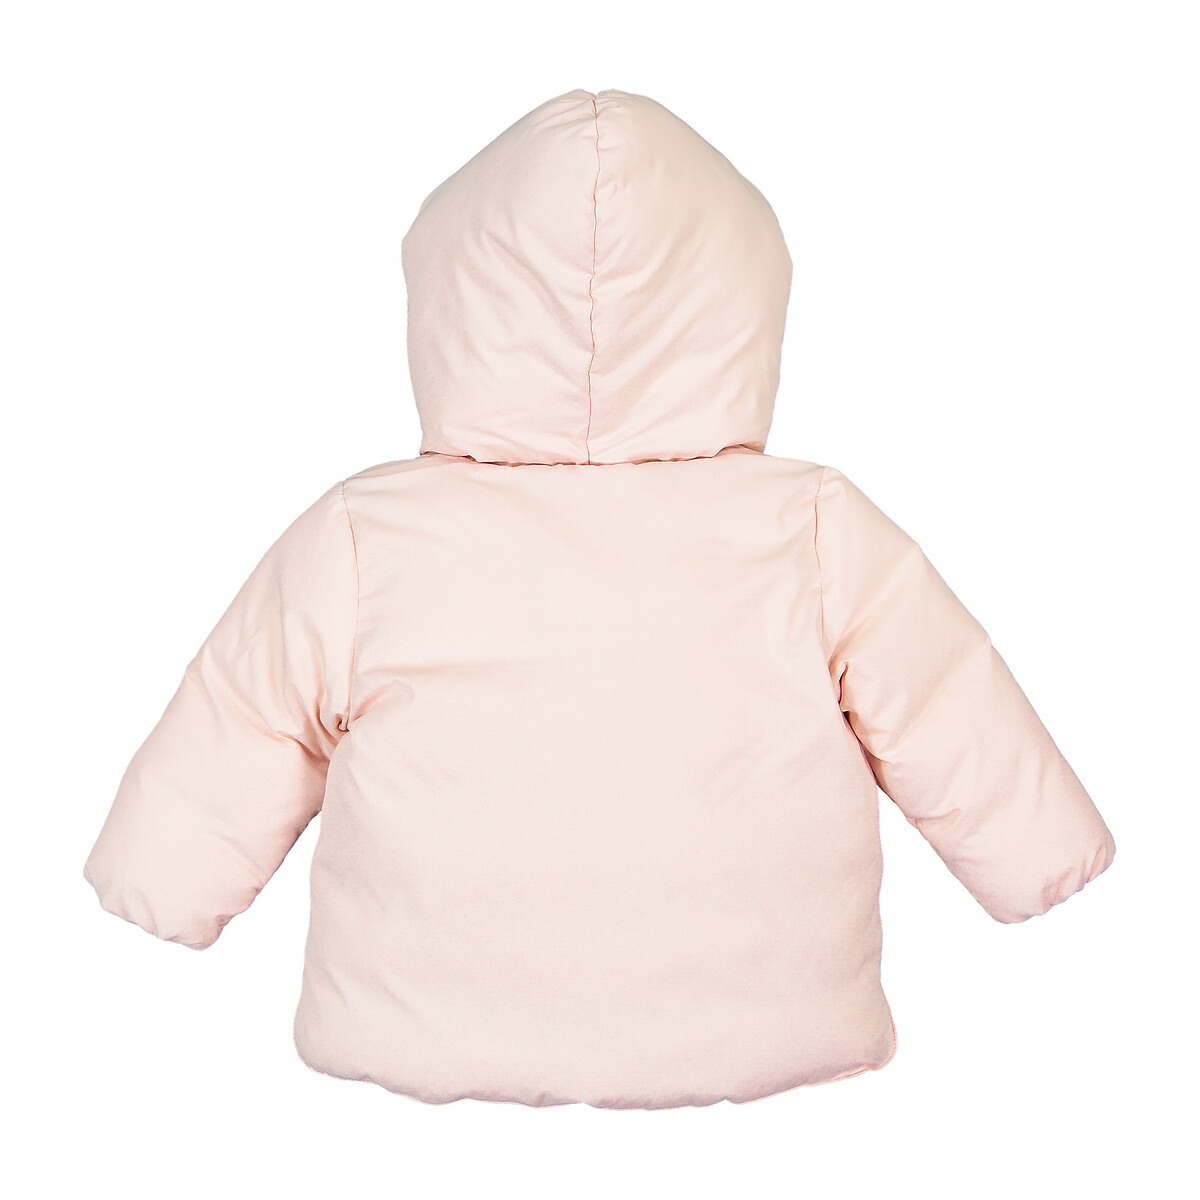 Куртка La Redoute Стеганая утепленная с капюшоном 3 мес-4 года 6 мес. - 67 см розовый, размер 6 мес. - 67 см - фото 4